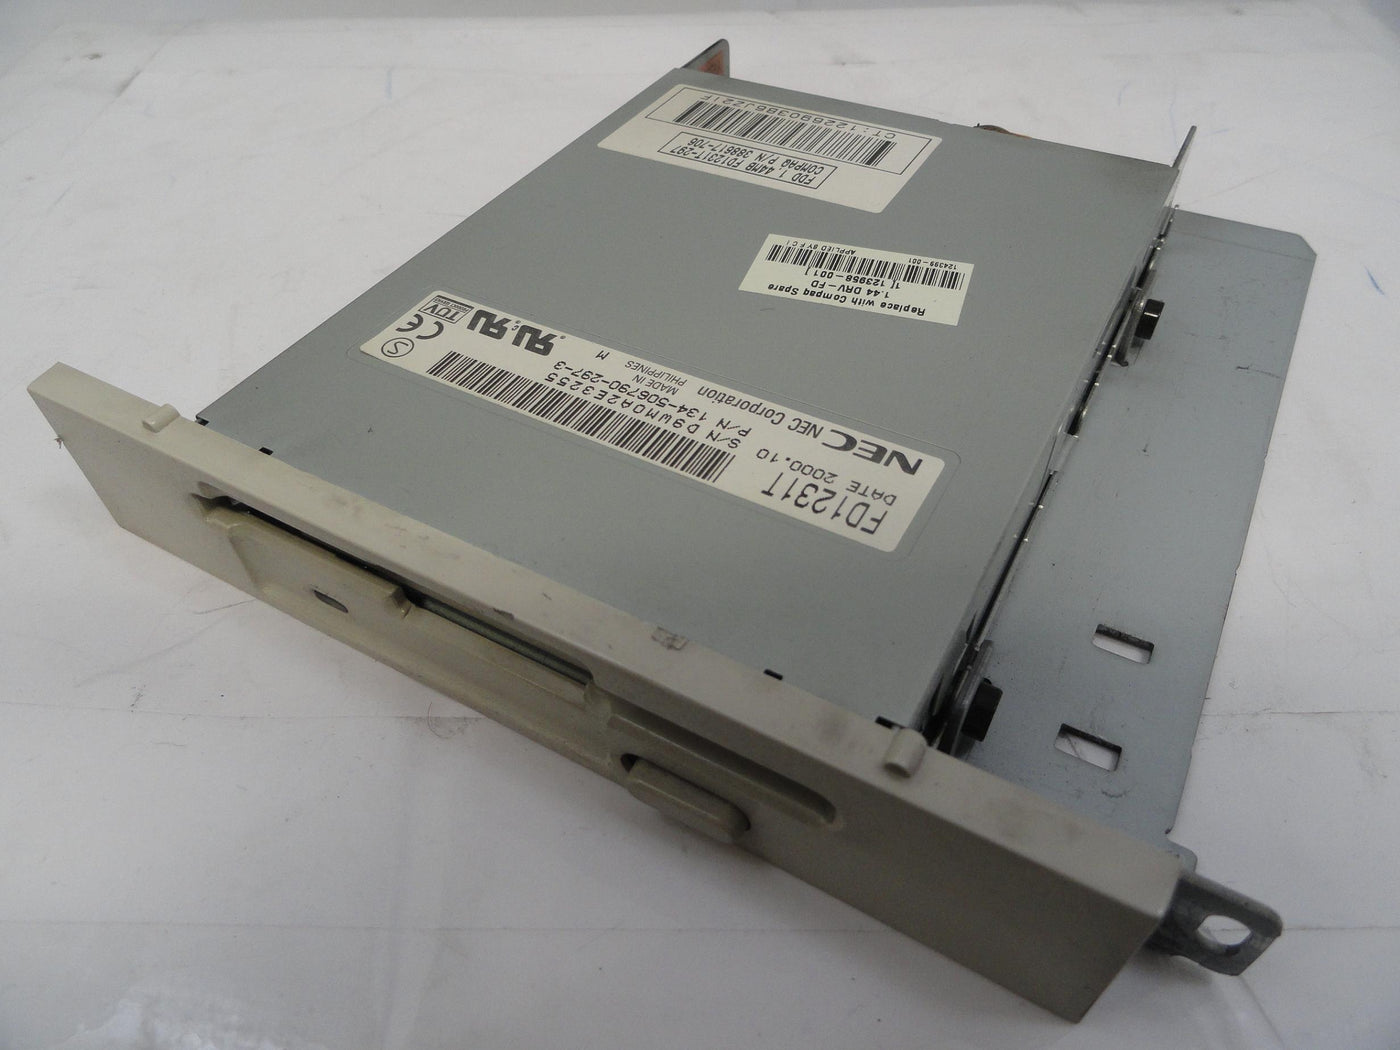 PR16663_F1231T-297_NEC 3.5in White Floppy Disc Drive in 5.25In Mount - Image3